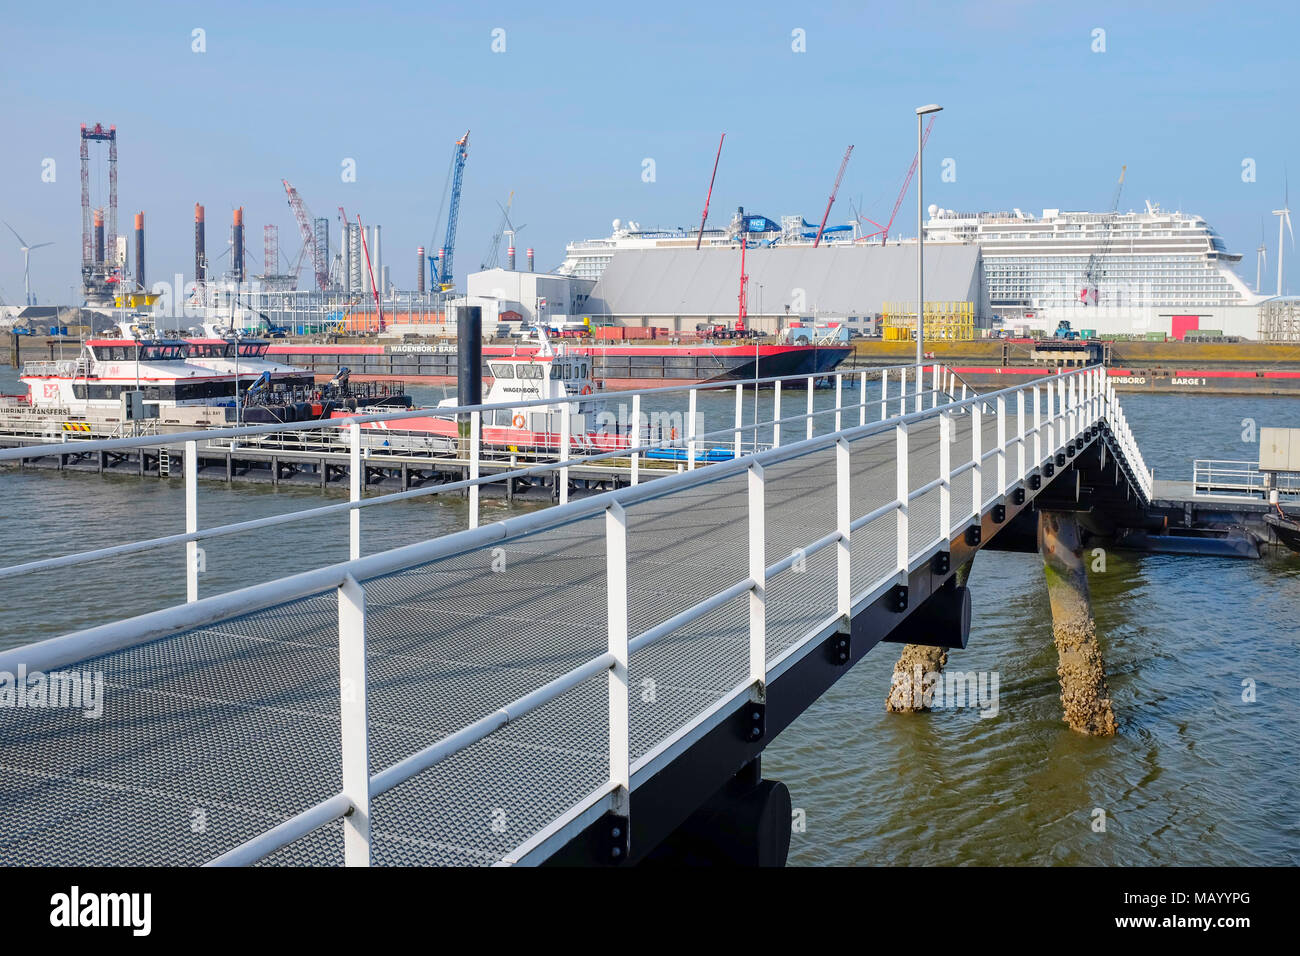 Bliss norvegese nave da crociera la ricezione finale opere costruttive nel porto di Eemshaven, Paesi Bassi. Foto Stock